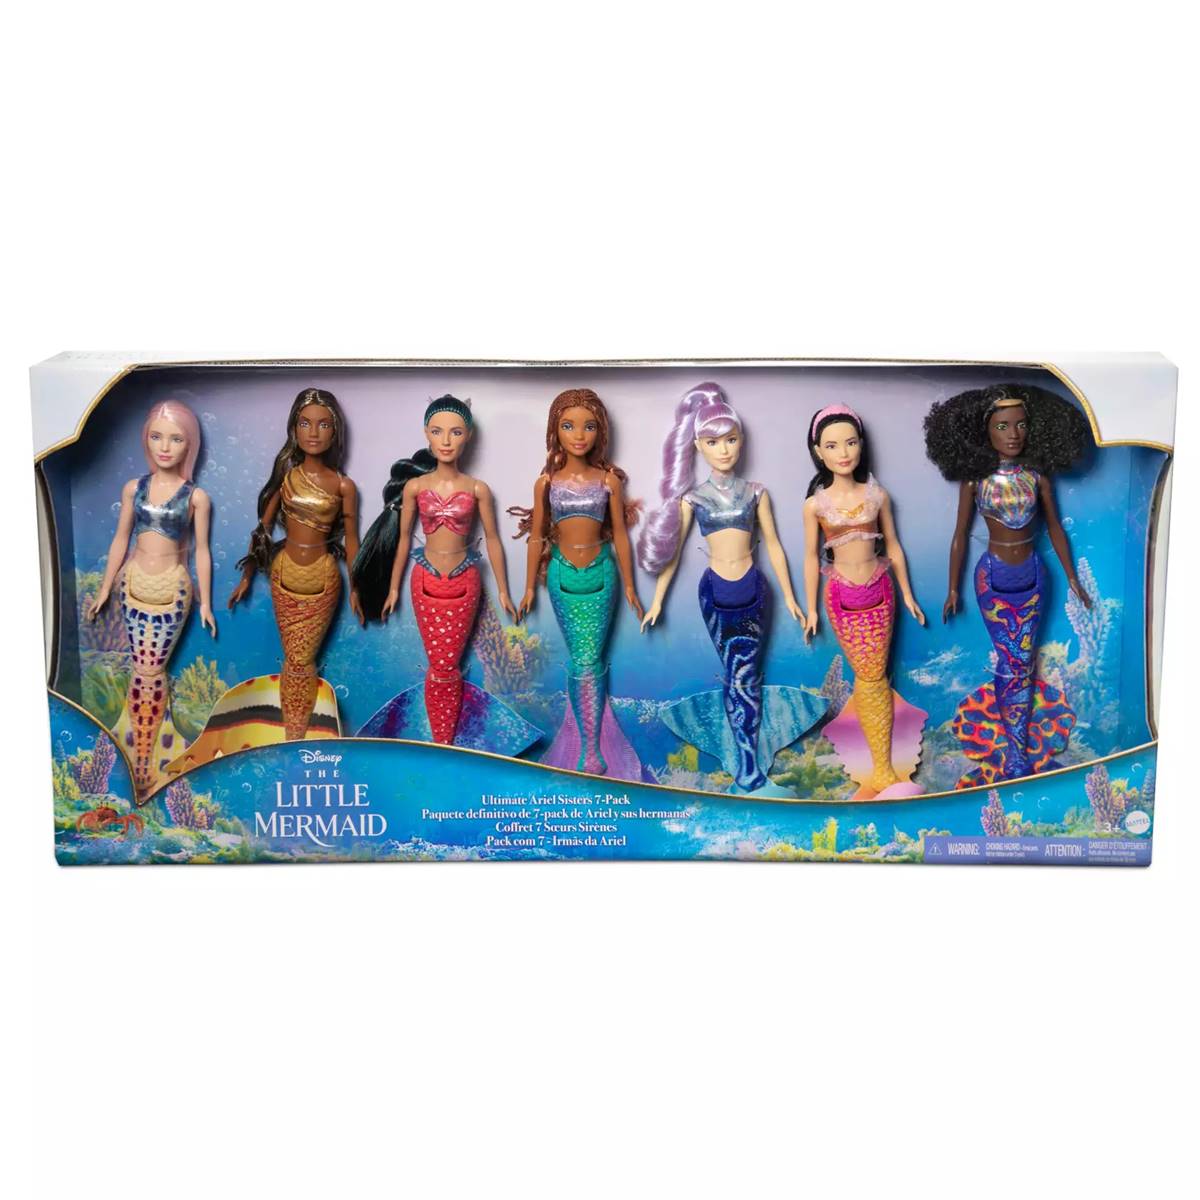 Disneys 7pk. 12in. Little Mermaid Sisters Dolls